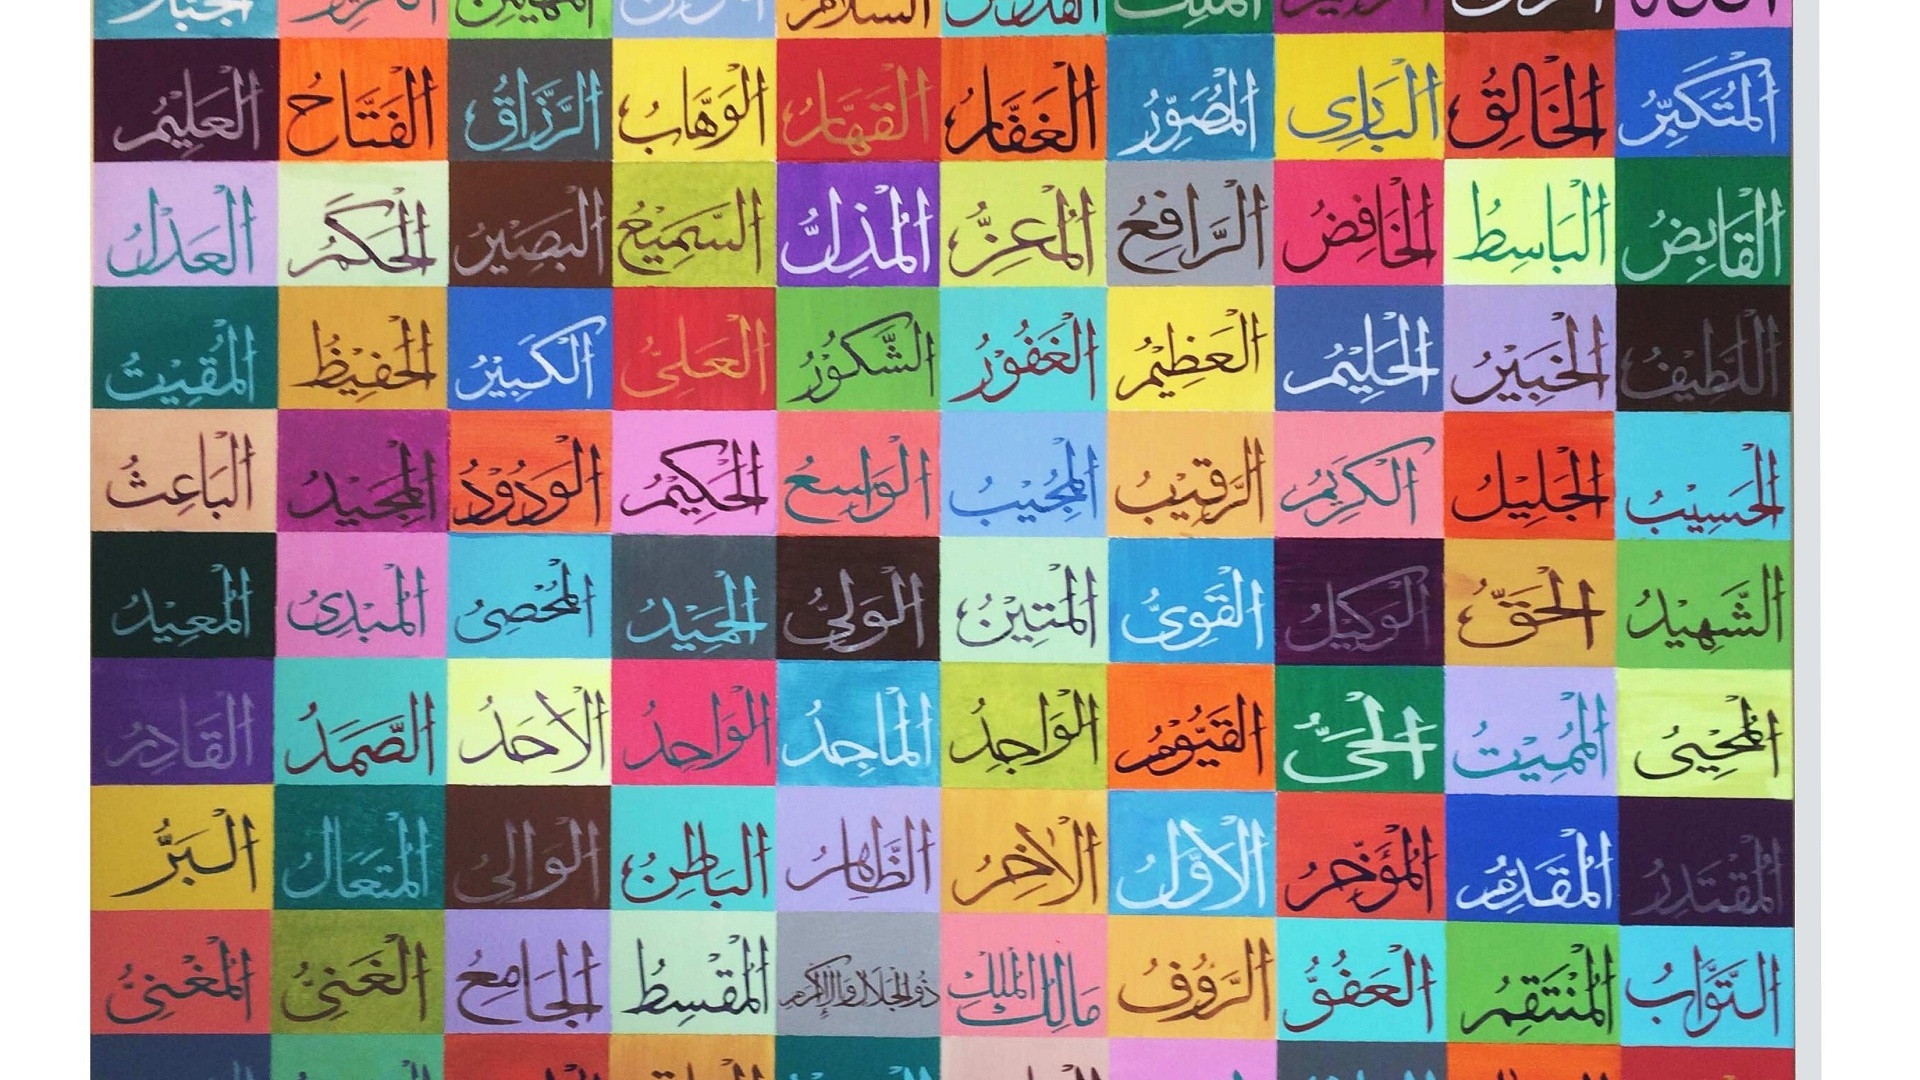 99 Names Of Allah Wallpaper - Names Of God In Islam - 1920x1080 Wallpaper -  